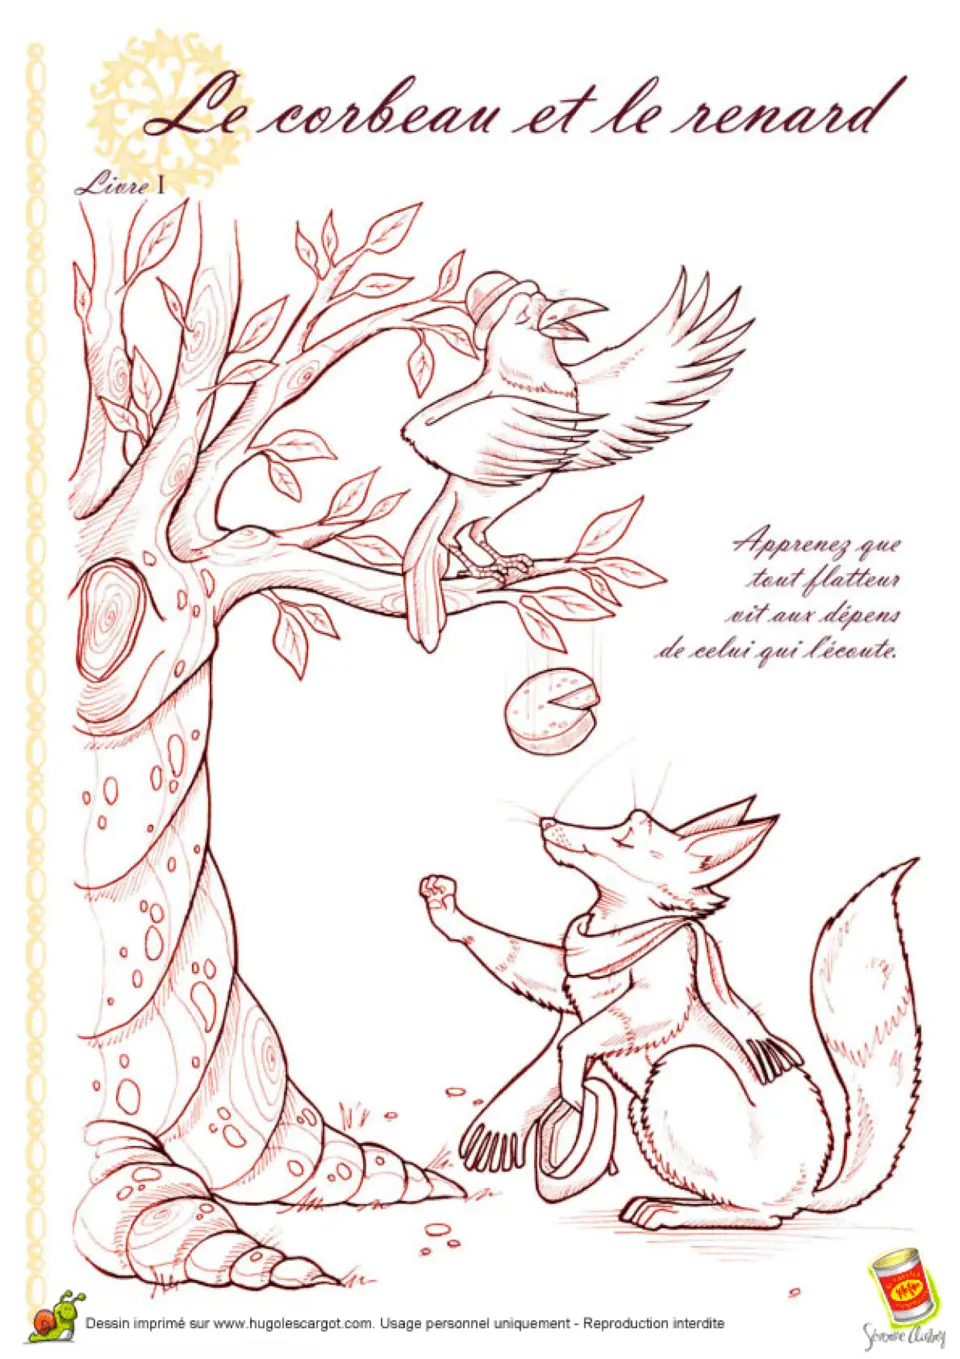 Ворона и лисица рисунок